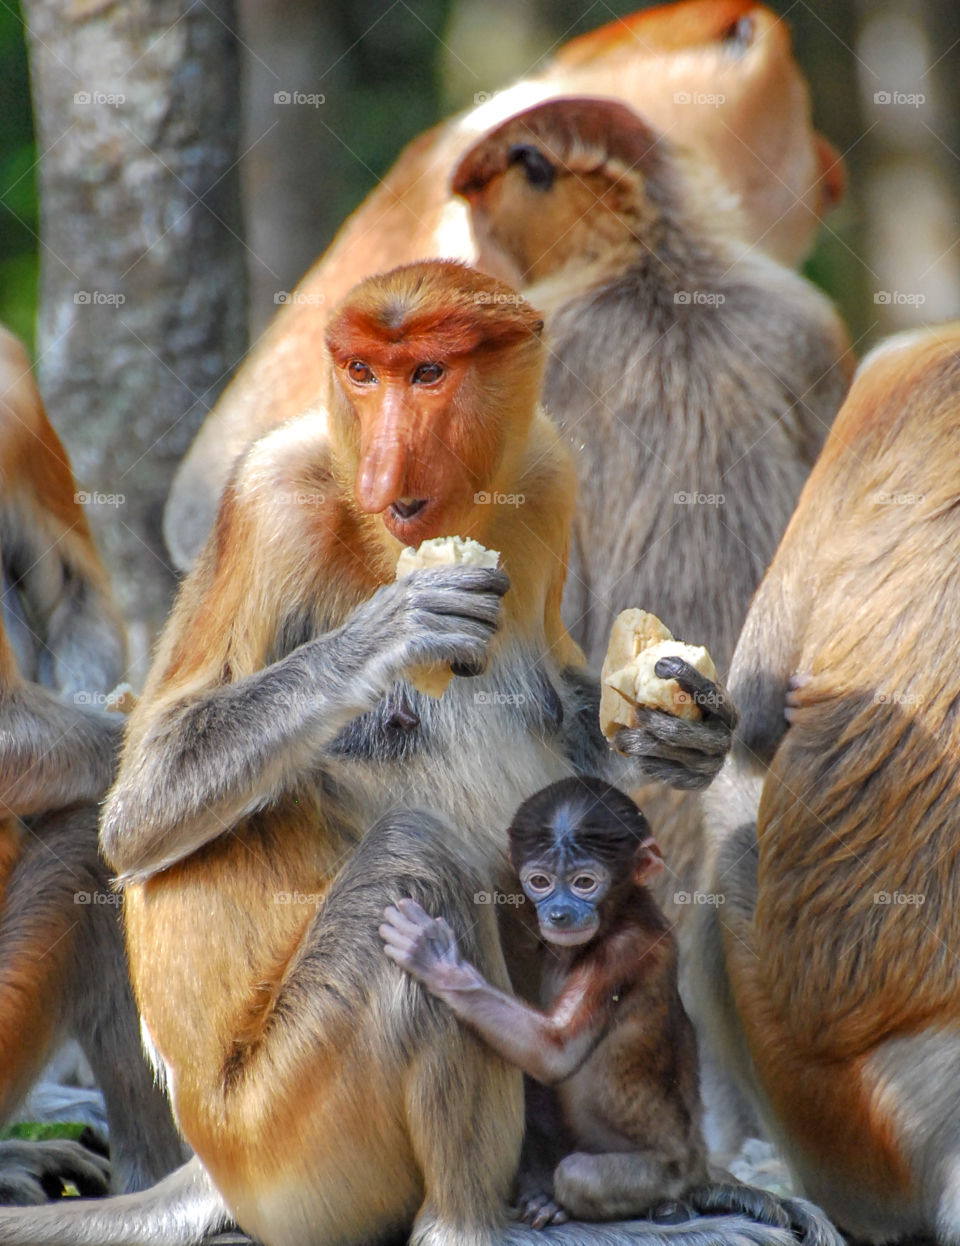 Proboscis monkey eating